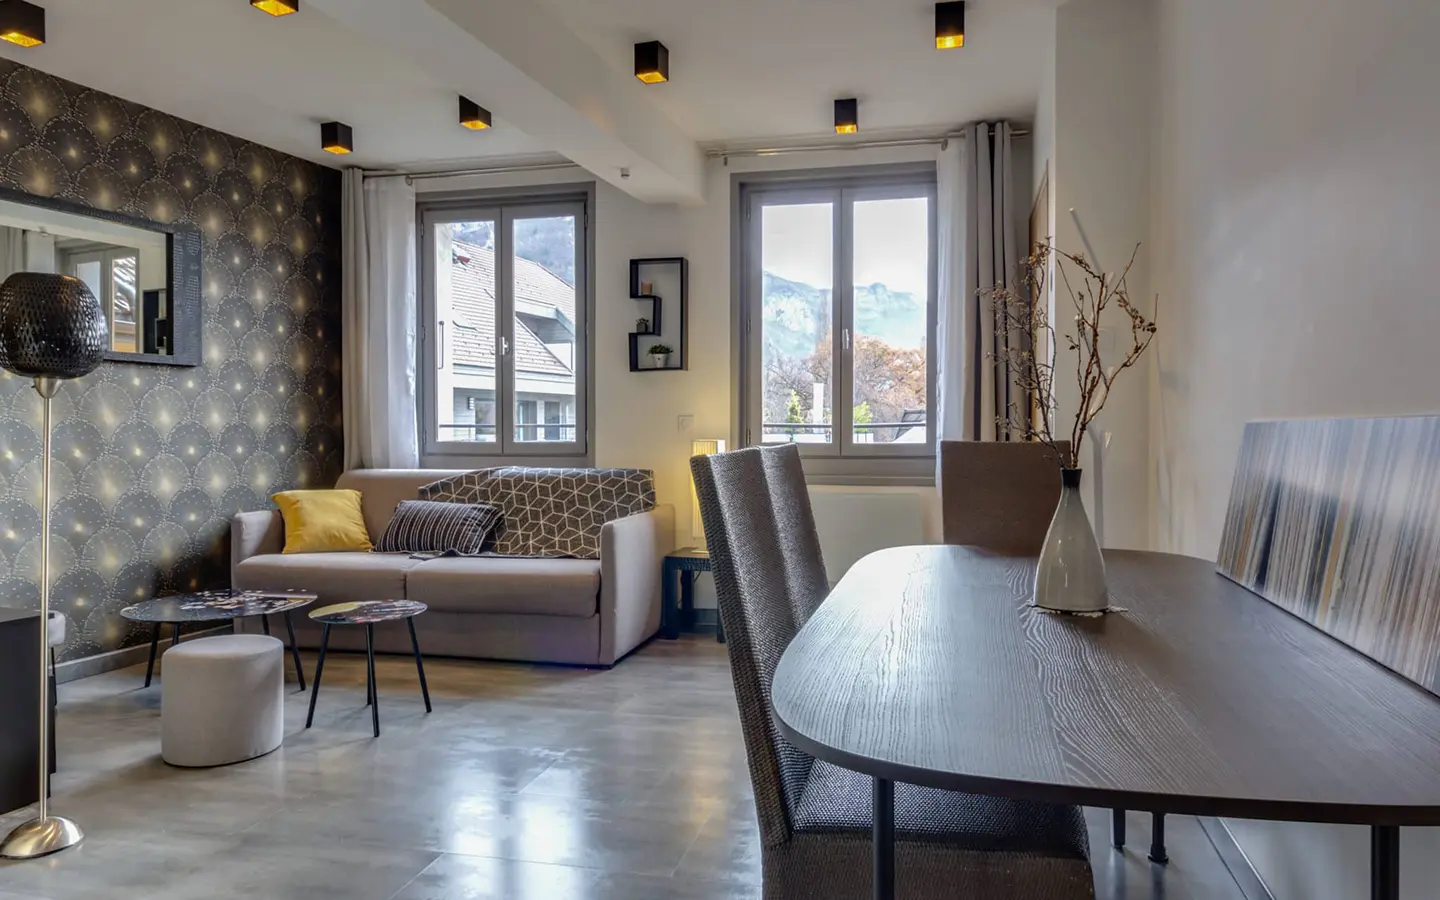 Achat immobilier appartement Annecy-le-vieux salle à manger